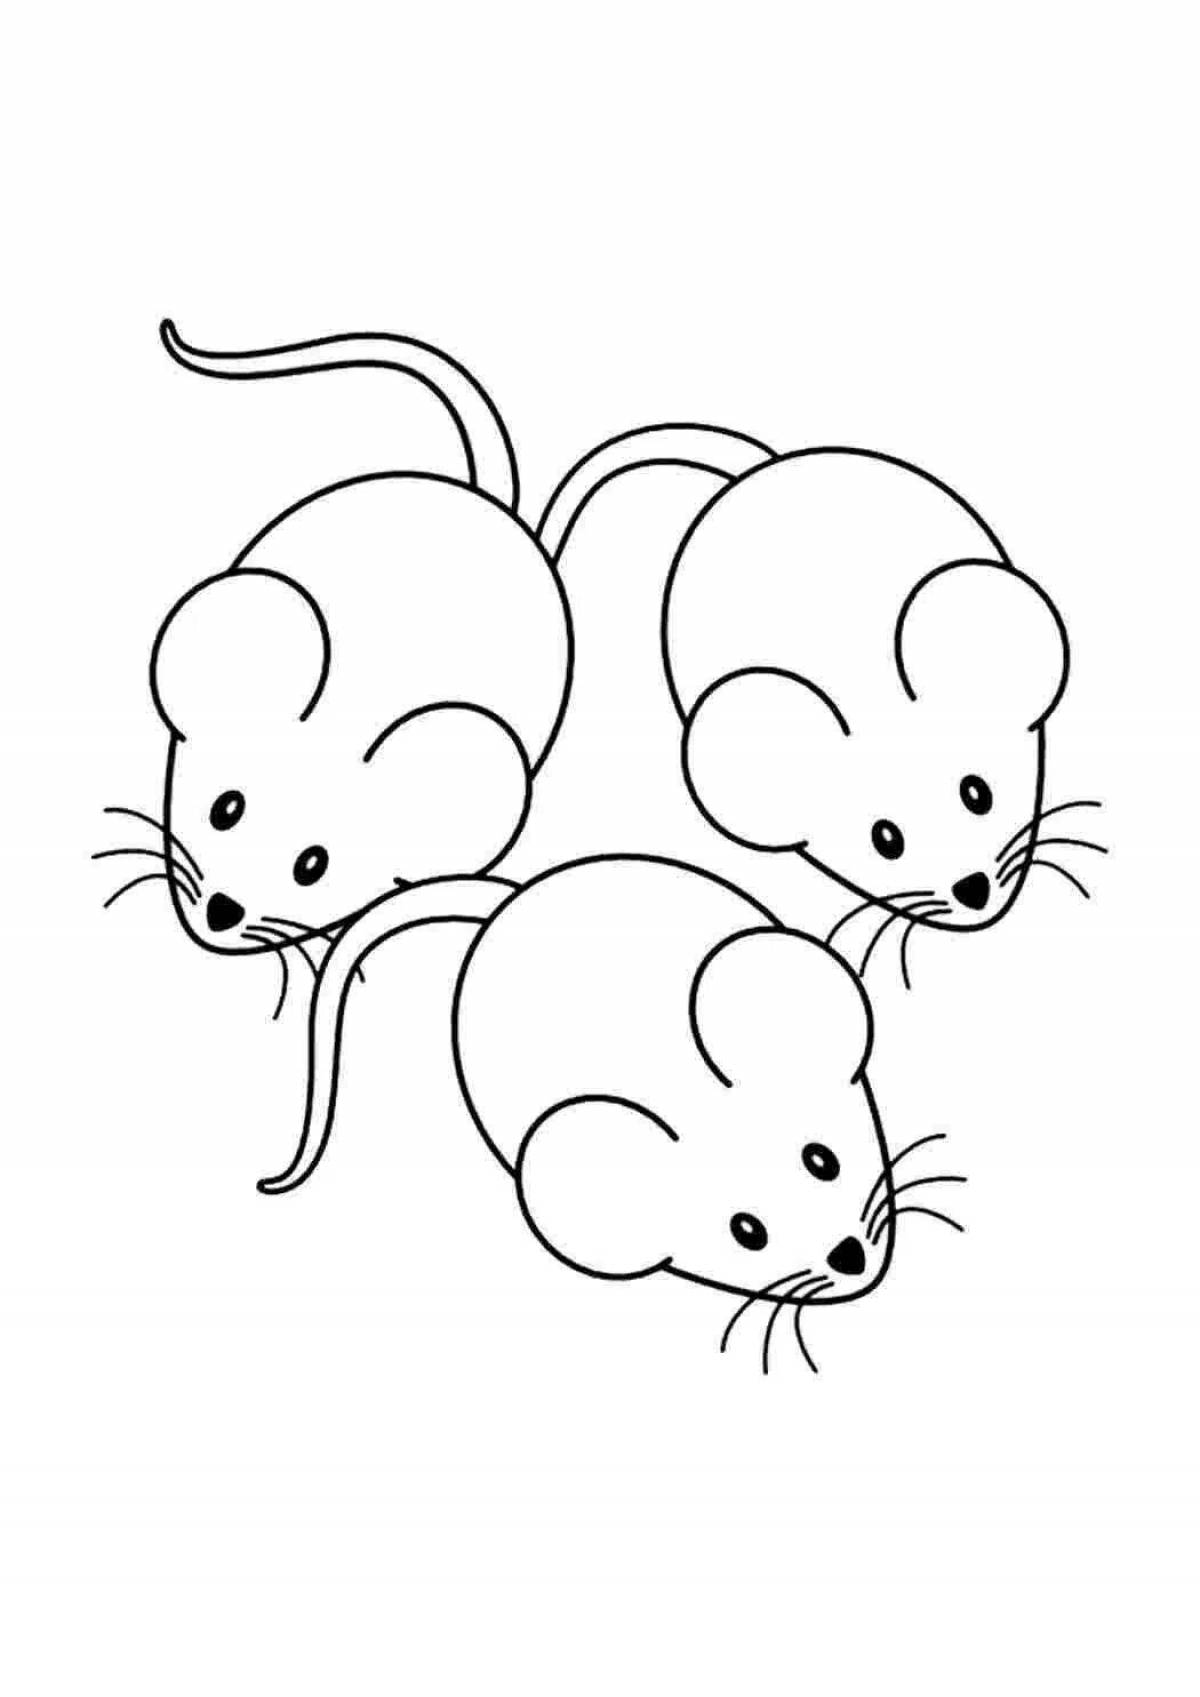 Красочная раскраска мышь для детей 2-3 лет